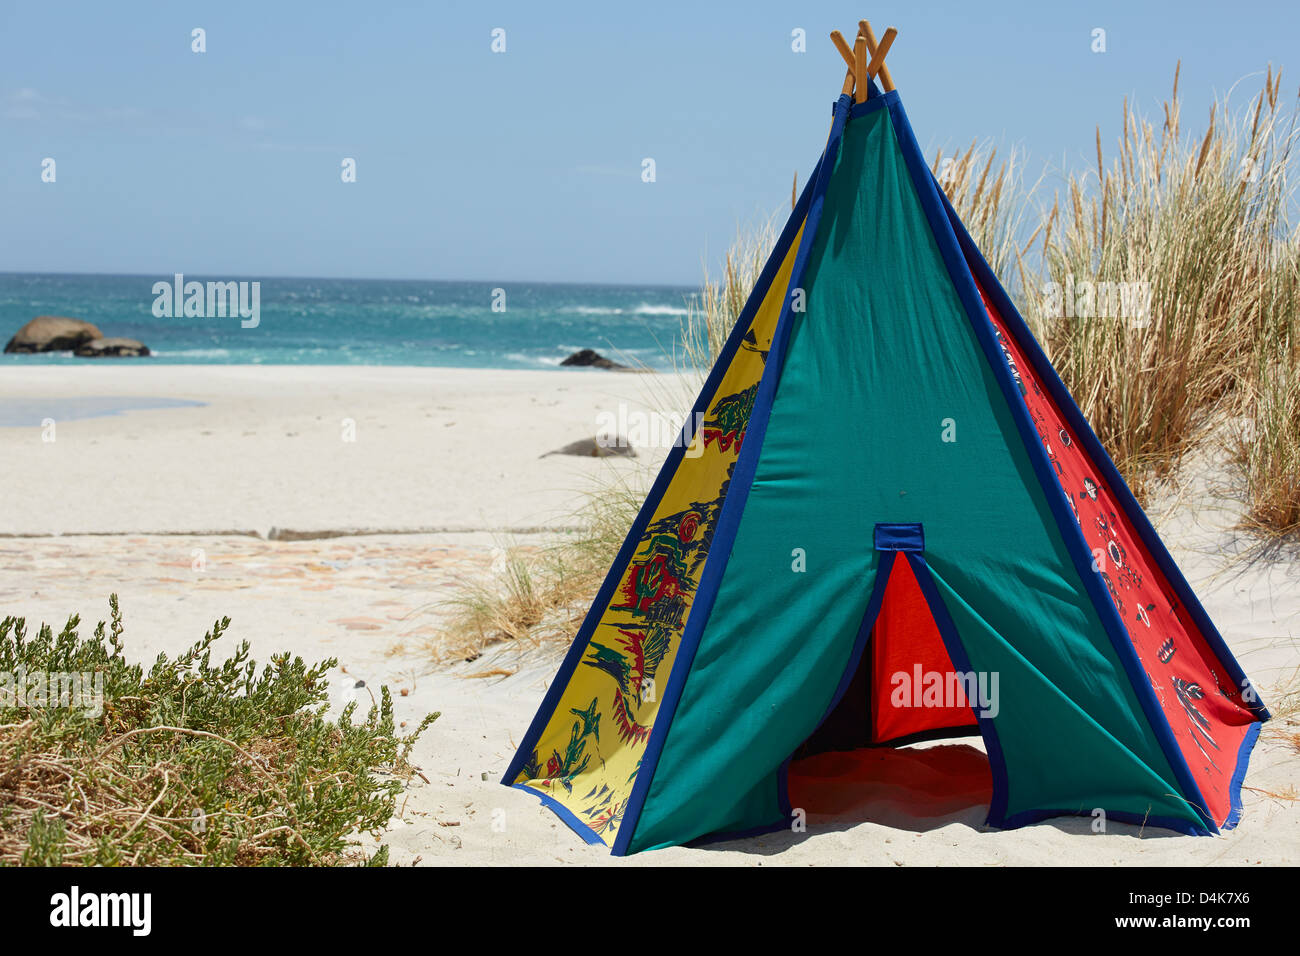 Multi colore tenda teepee erba spiaggia mare di sabbia Foto Stock